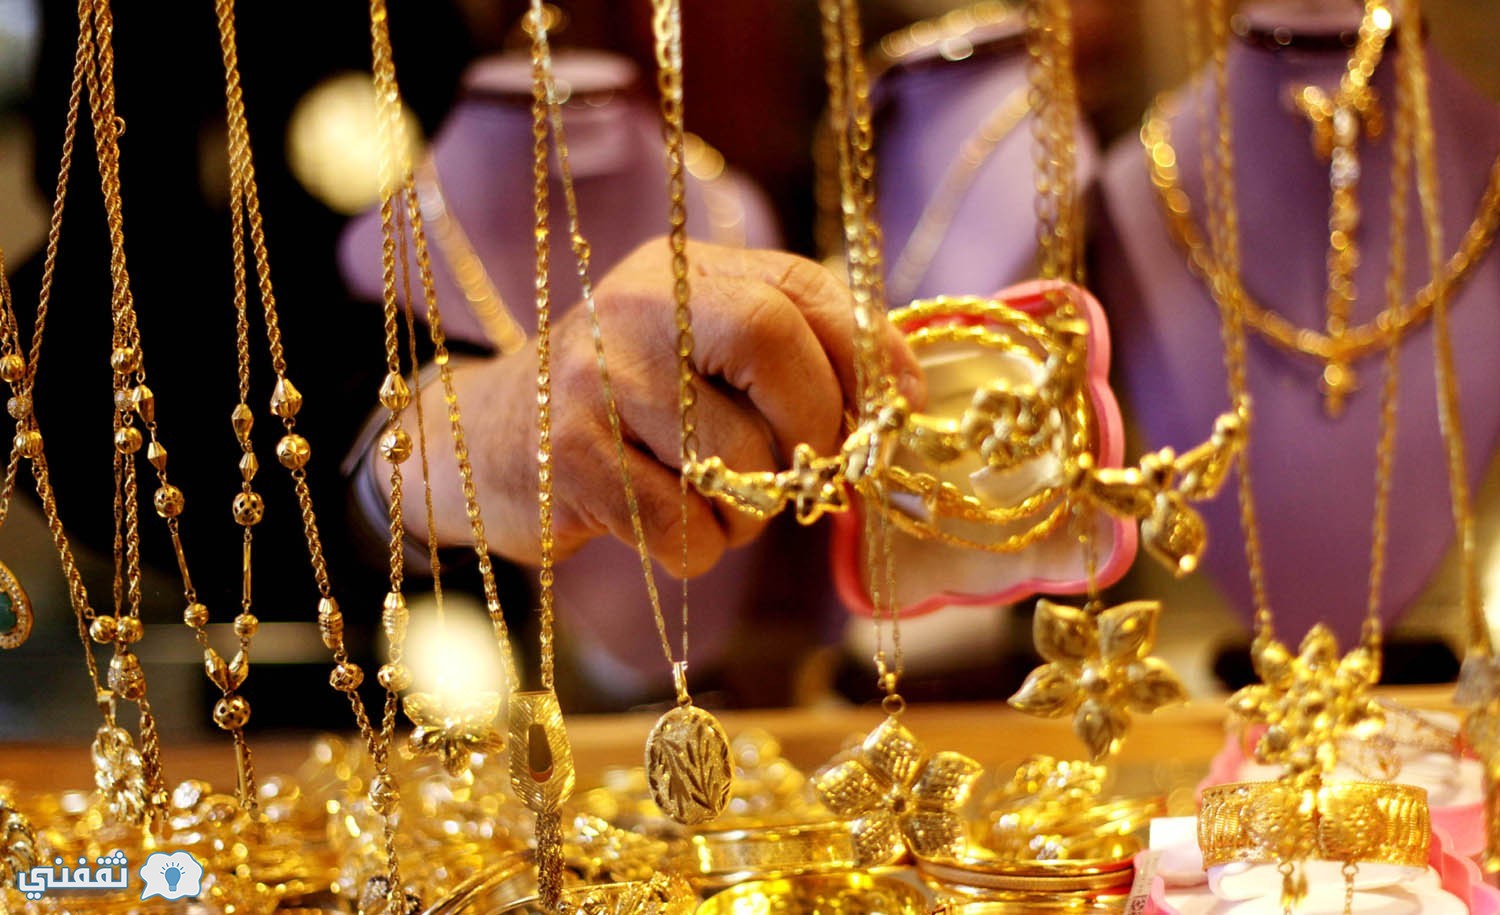 أسعار الذهب اليوم فى مصر الثلاثاء 25-10-2016 سعر الذهب اليوم في محلات الصاغة اليوم الثلاثاء 25 اكتوبر 2016